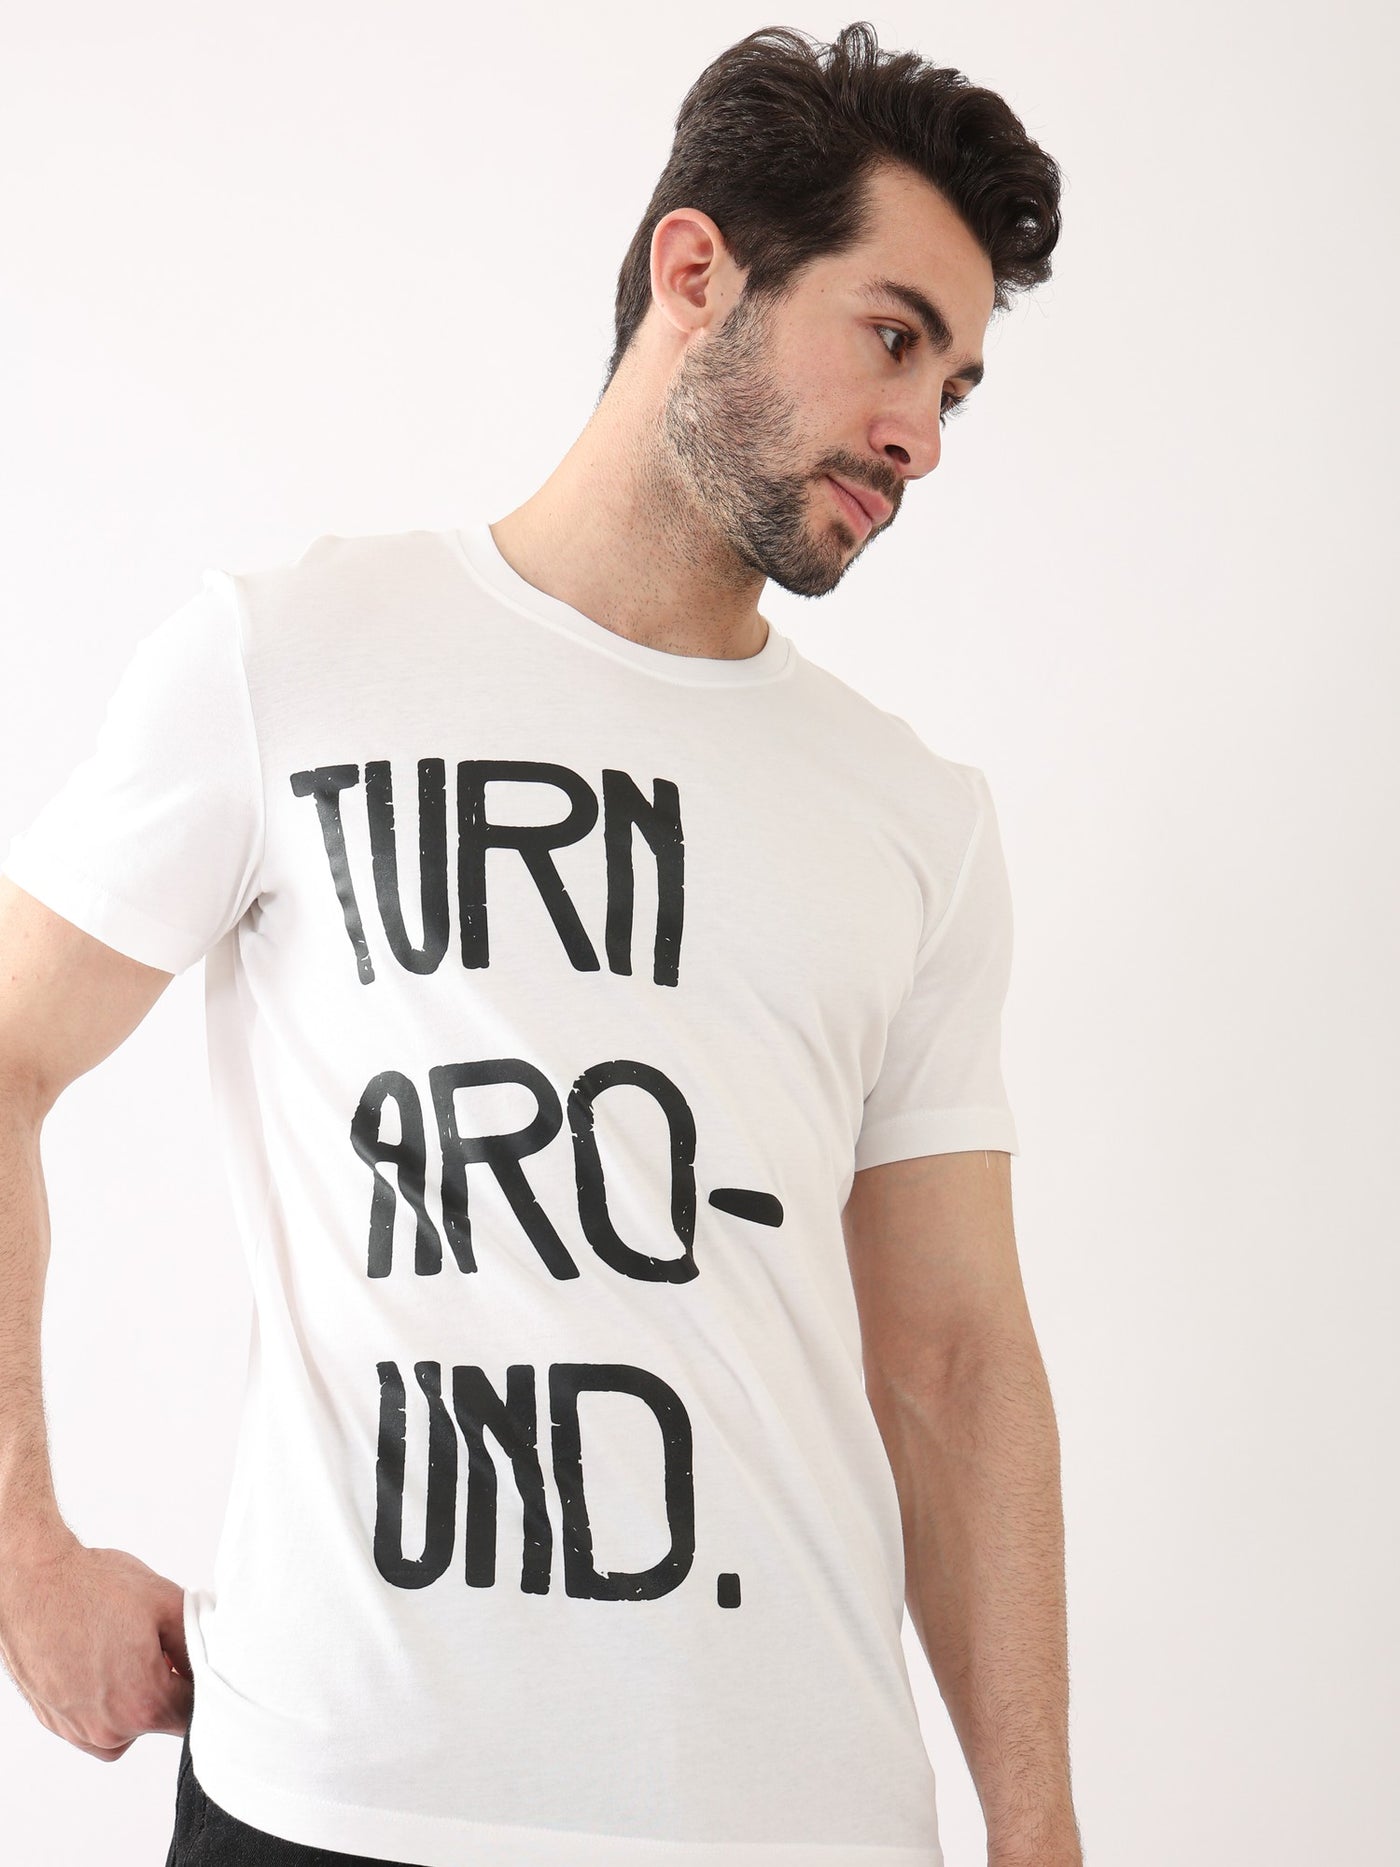 T-Shirt - "Turn Around" - Casual